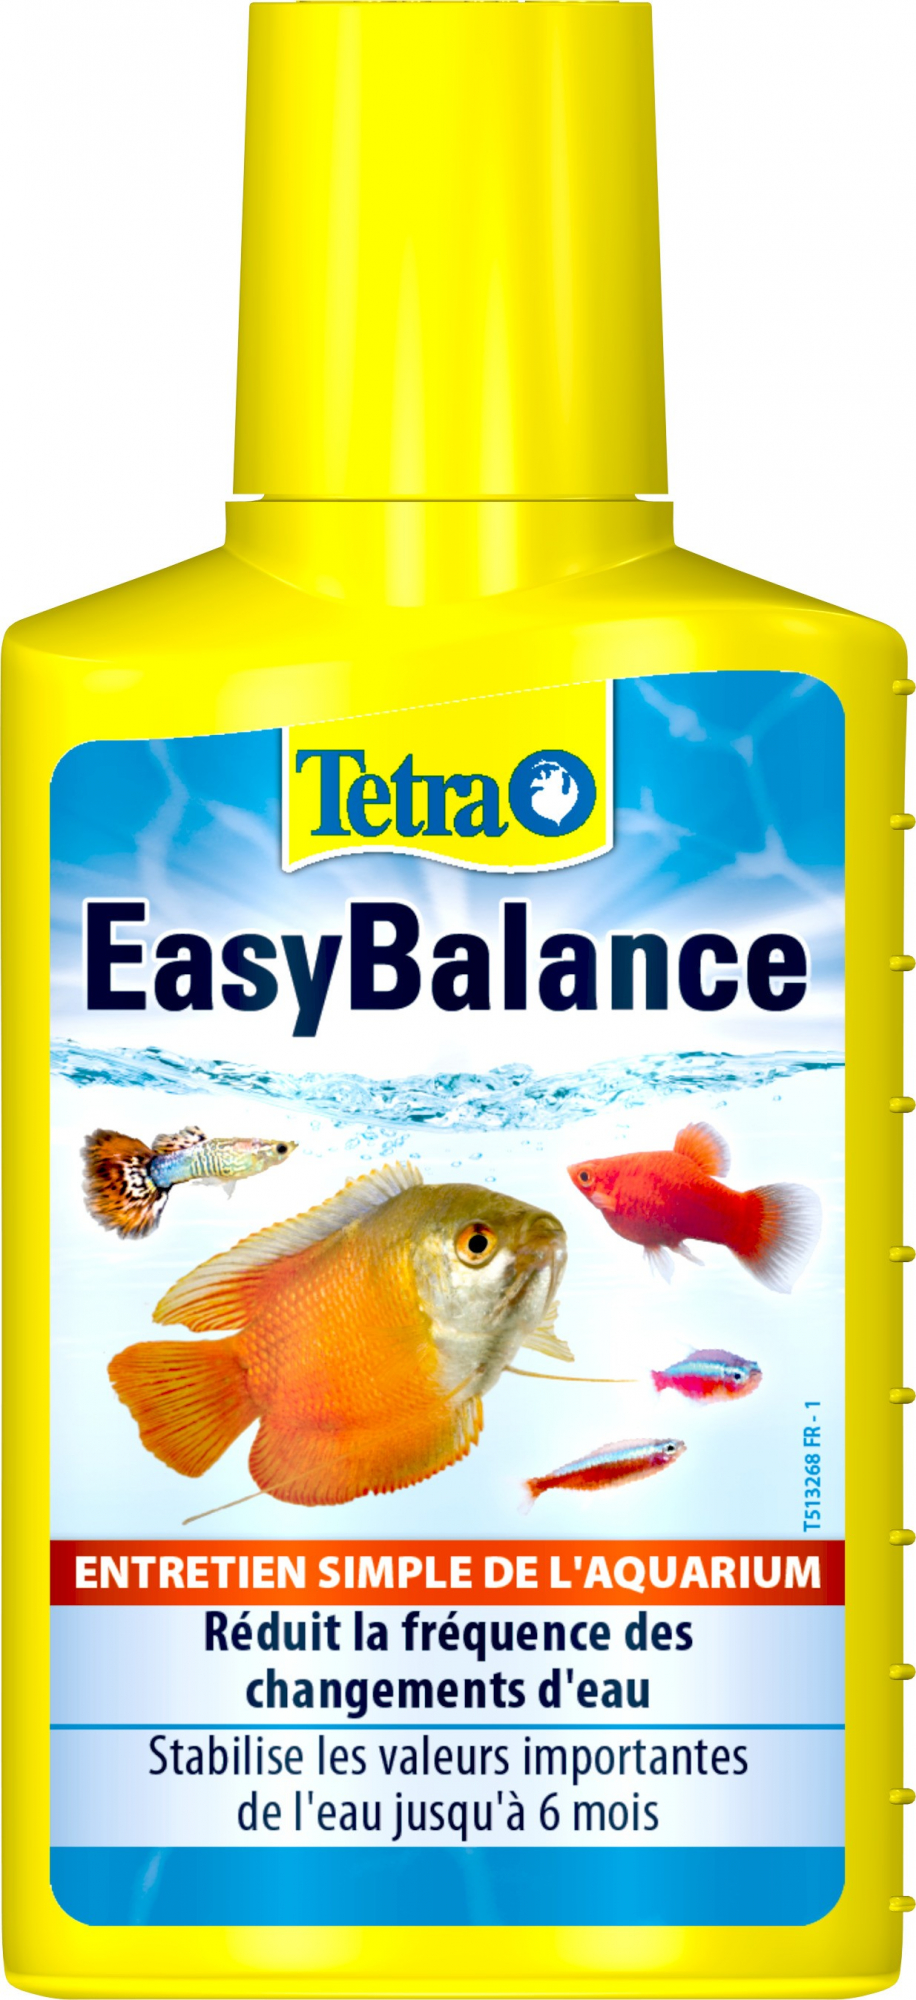 Purificador de água para aquário Tetra EasyBalanc - manutenção do equilíbrio ecológico